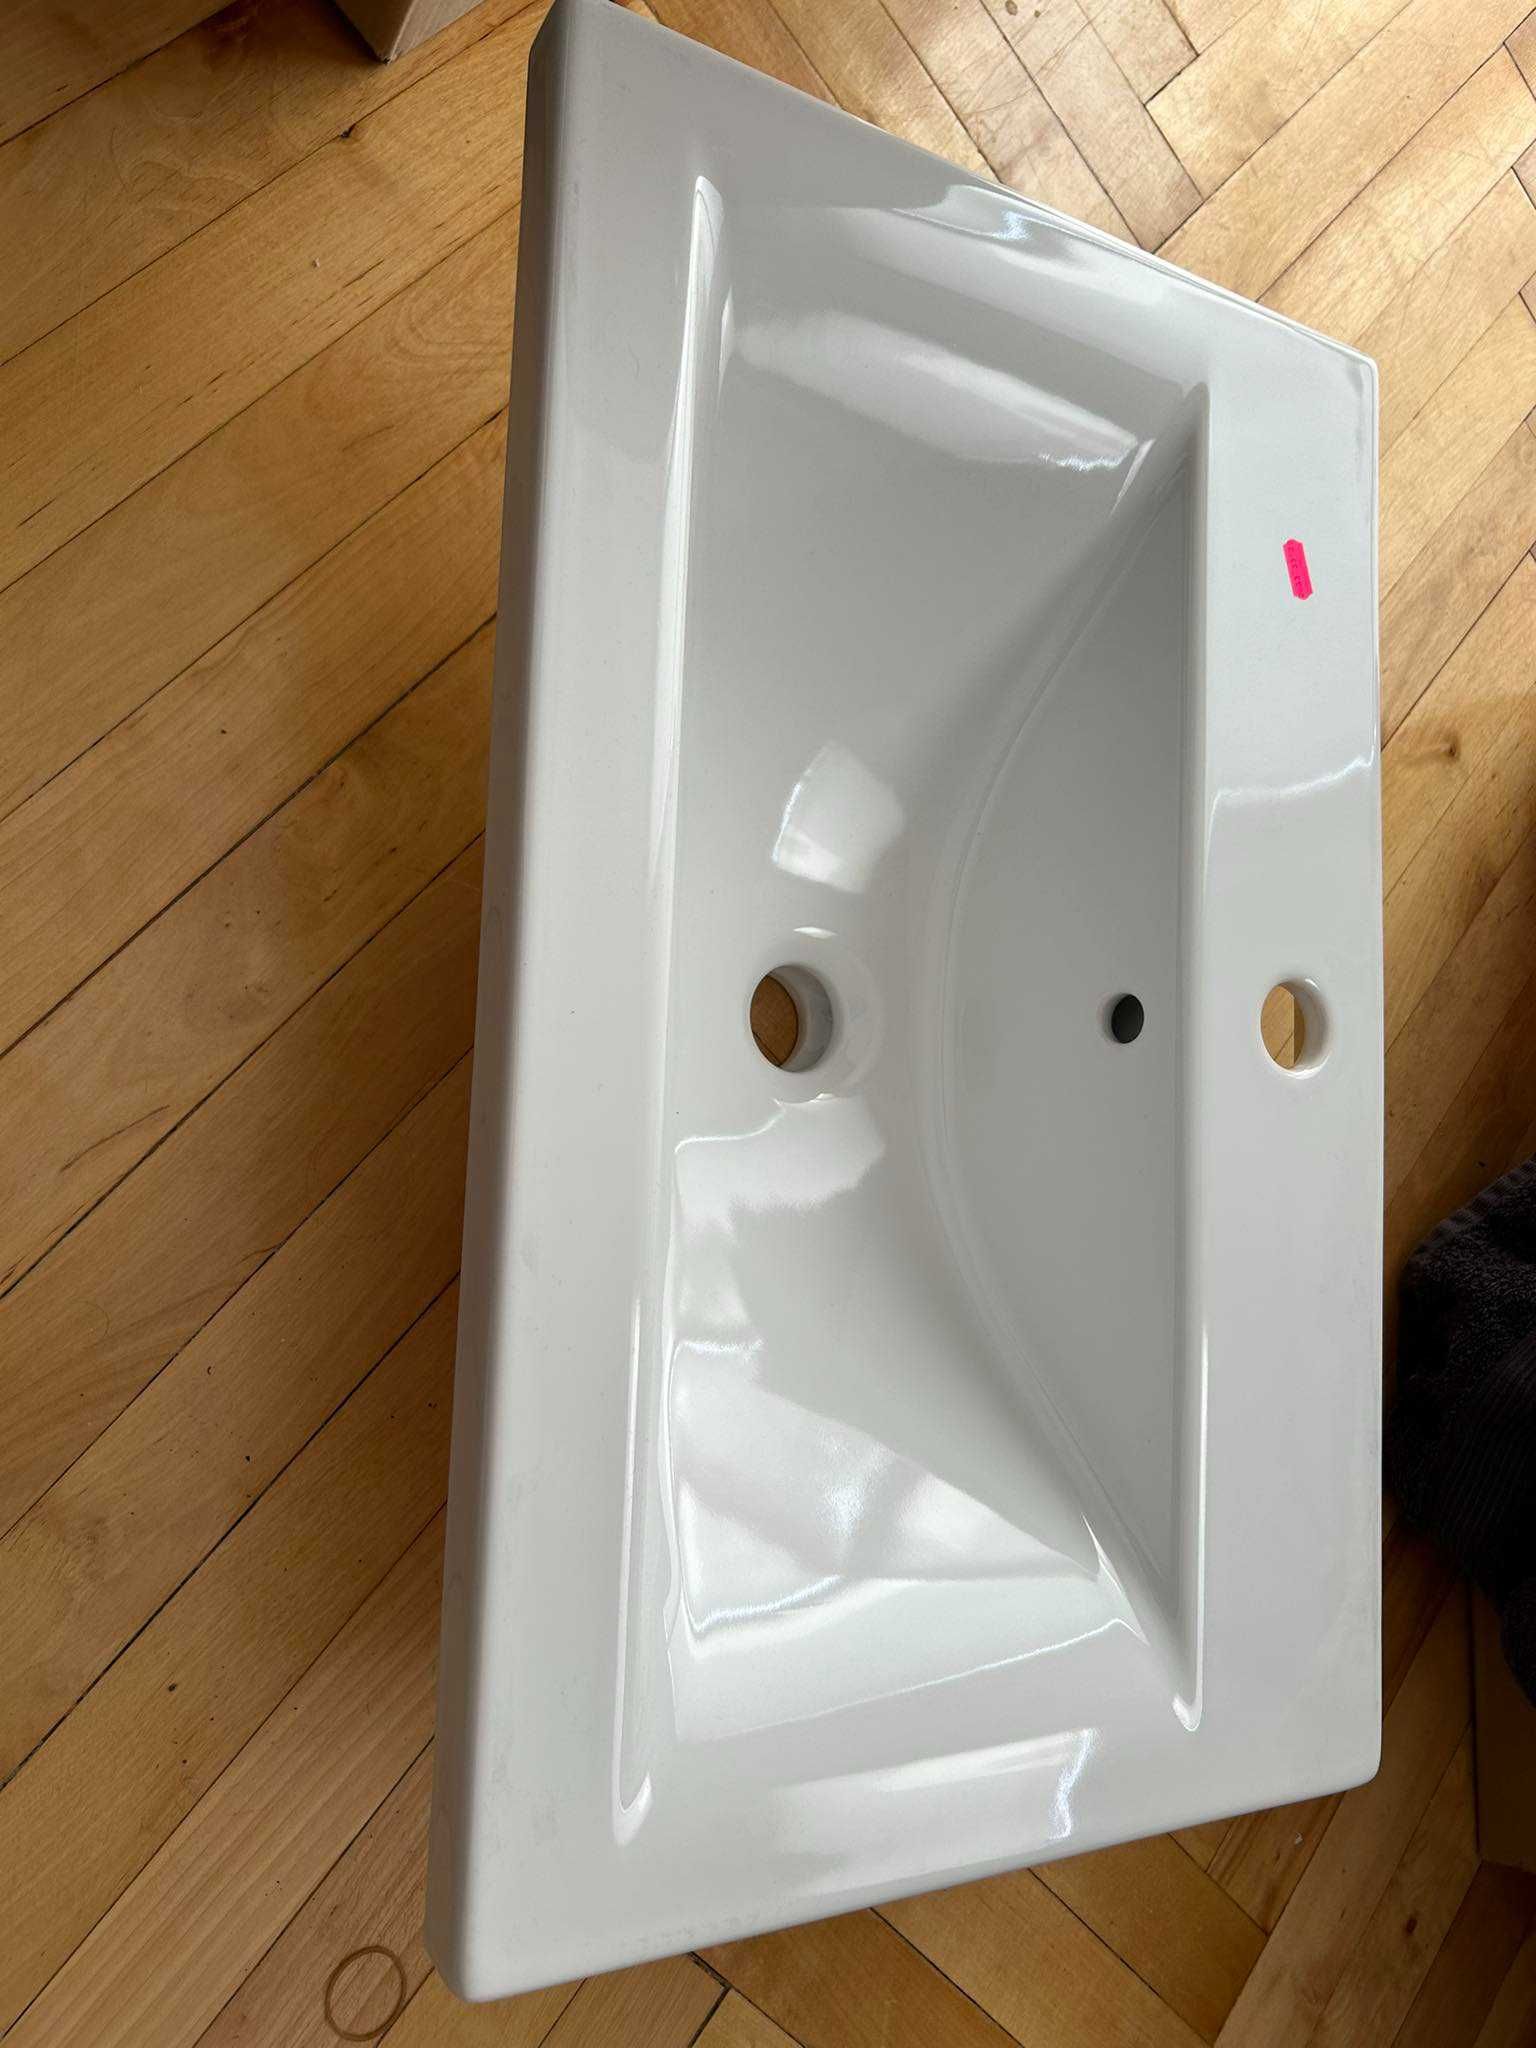 ELITE zestaw szafka z umywalką PIKO 60 biała - ciężko dostępna